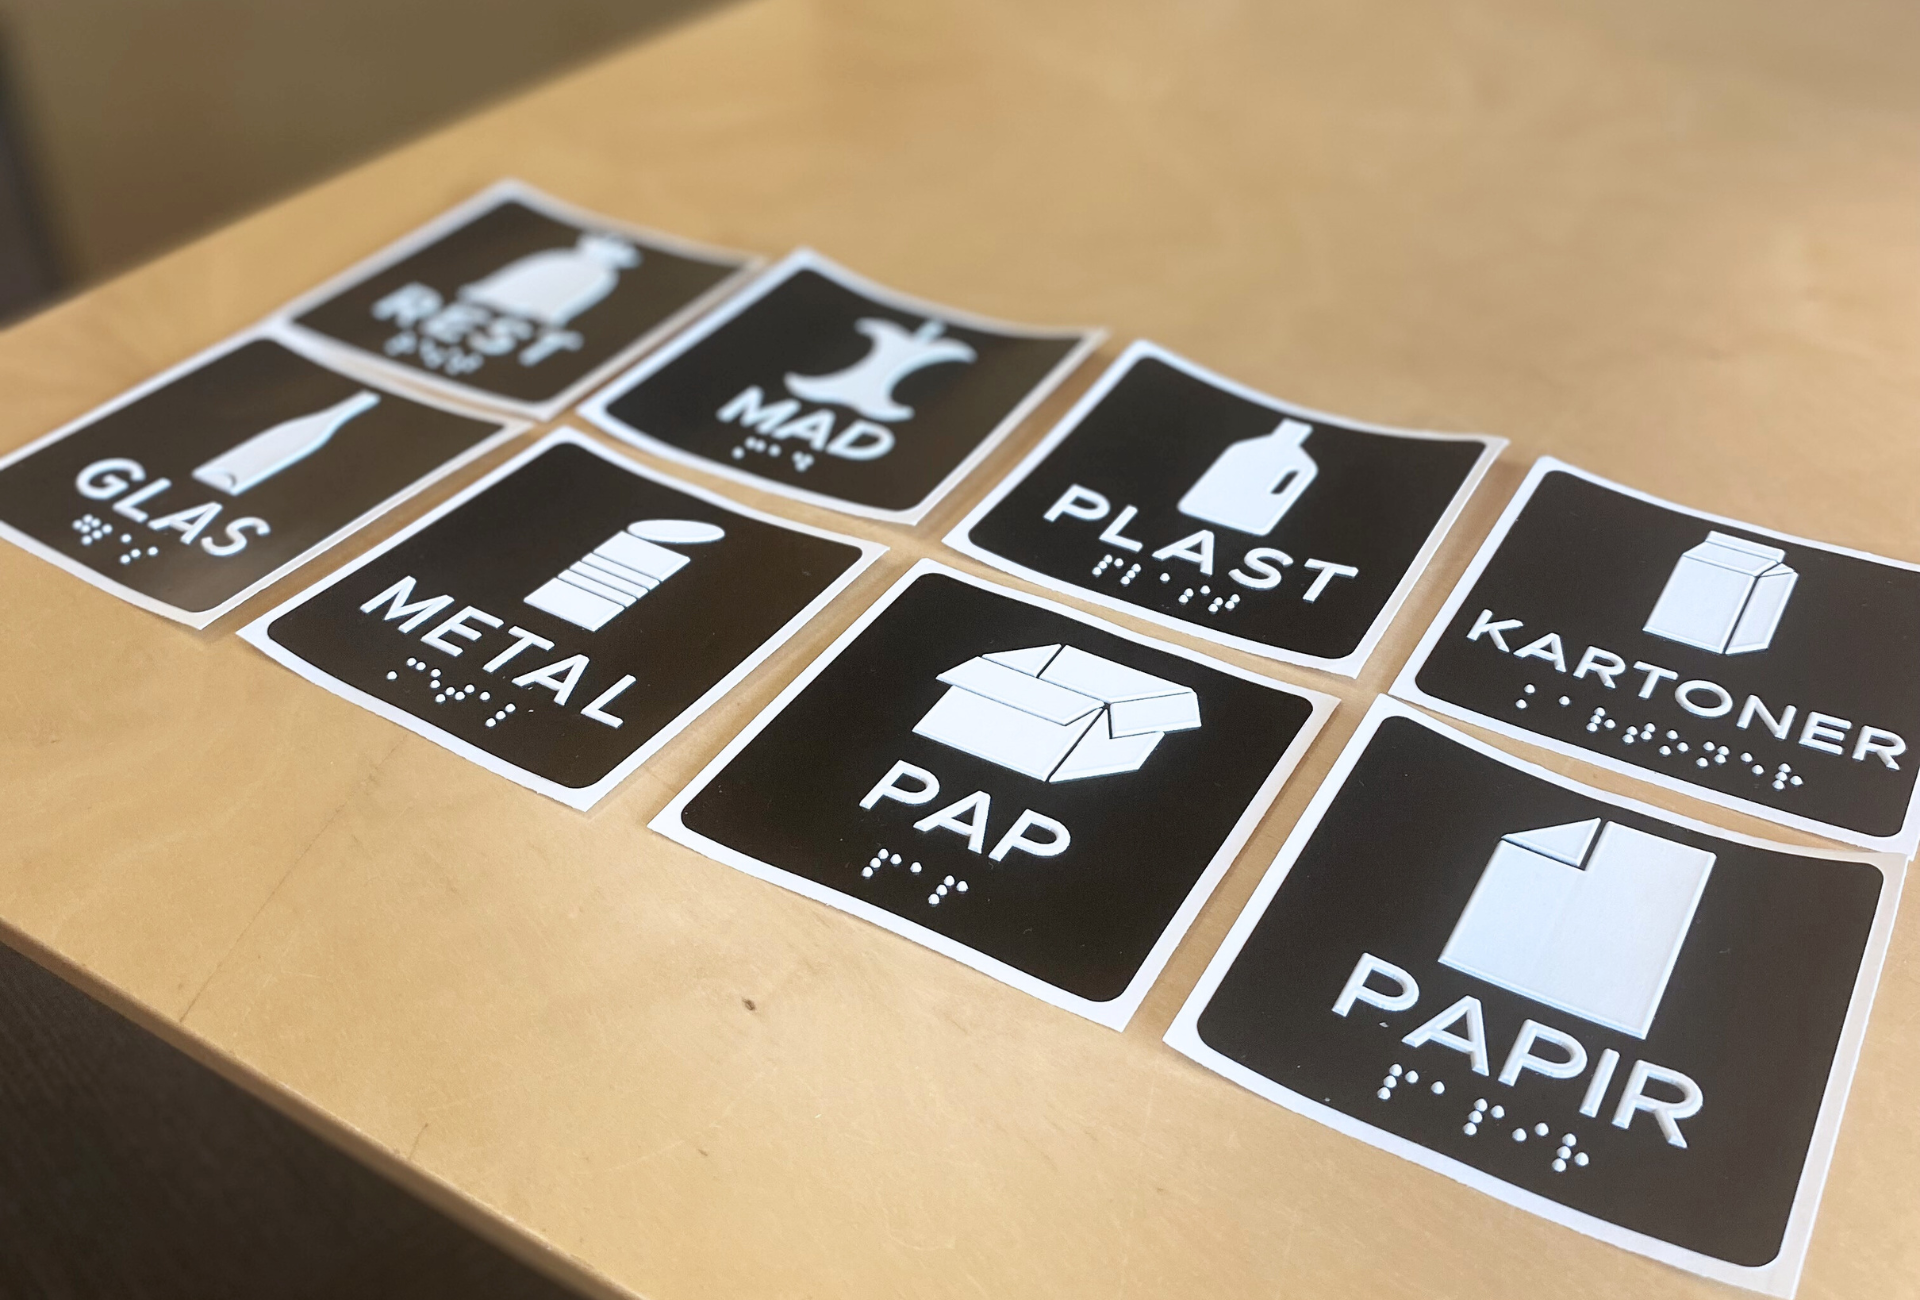 Her ser man de otte varianter af taktile skilte som Vesthimmerlands Forsyning tilbyder. Det drejer sig om henholdsvis pap, papir, glas, metal, plast, mad- og drikkekartoner, madaffald og restaffald. 